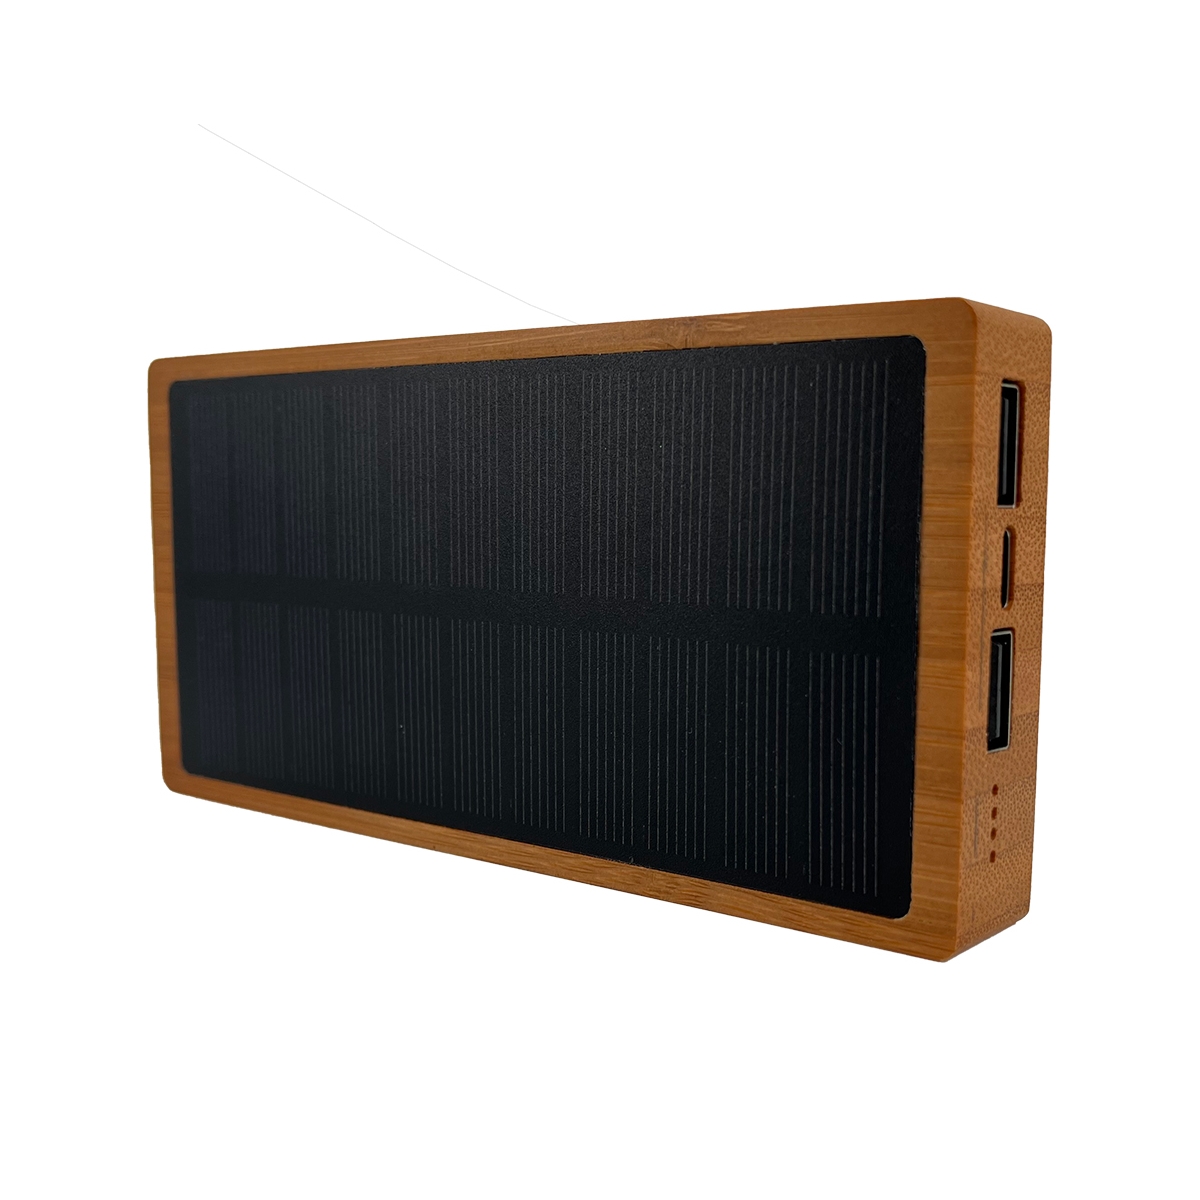 P32 - Powerbank éco solaire 10000